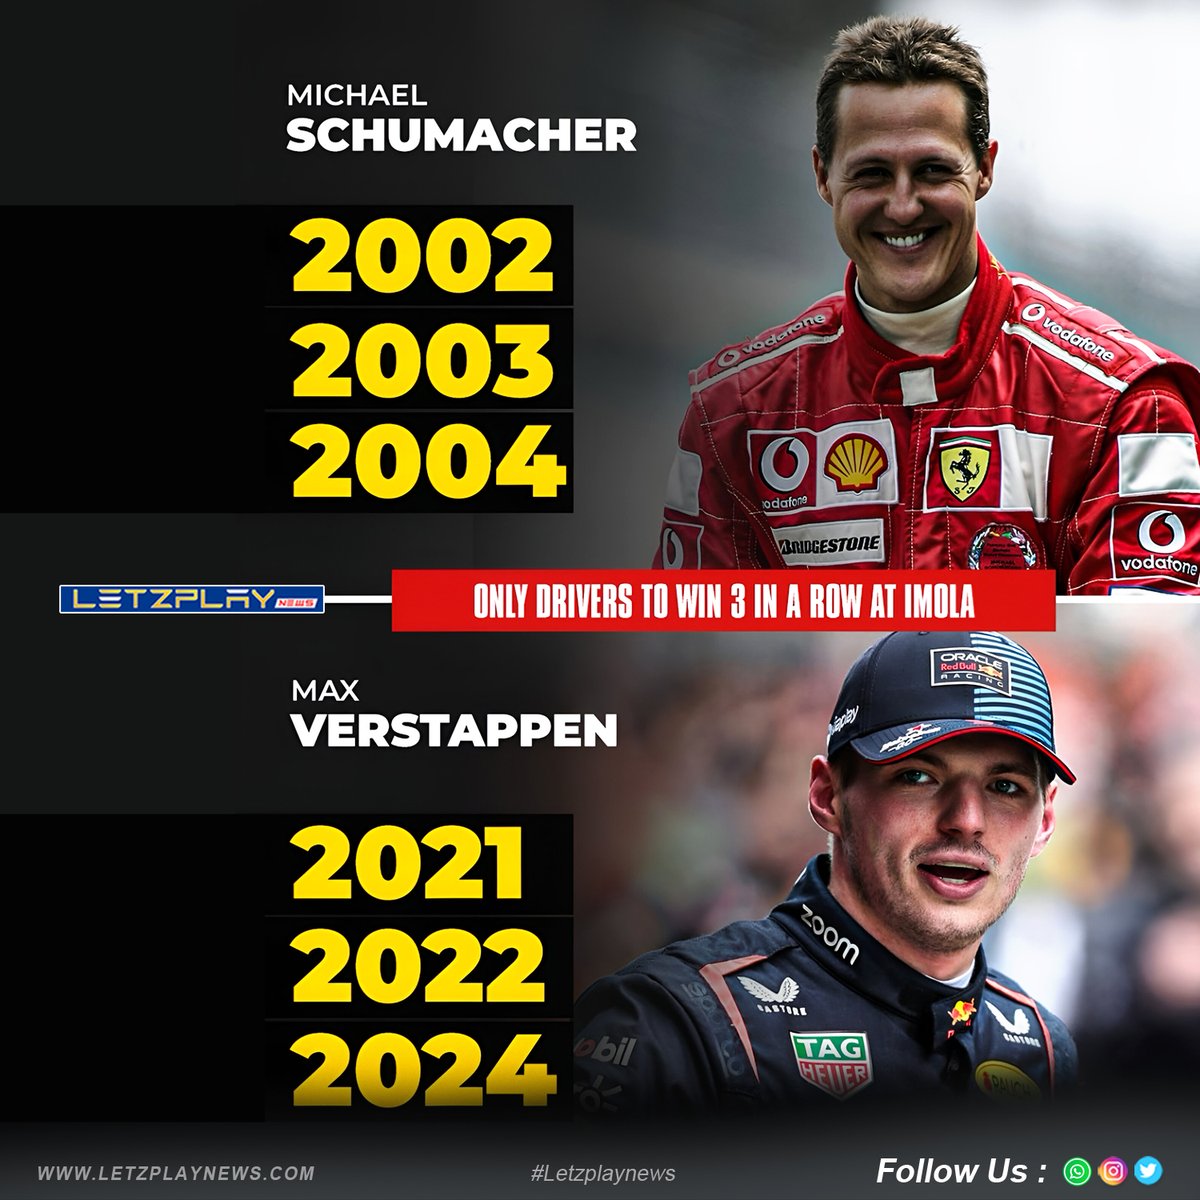 Max Verstappen 🤝 Michael Schumacher

Legends of the track! 🏎️🔥
.
.
.
.
#F1 #MaxVerstappen #MichaelSchumacher #ImolaGP #RacingLegends #Formula1 #Champions #sportsnews #NewsUpdate